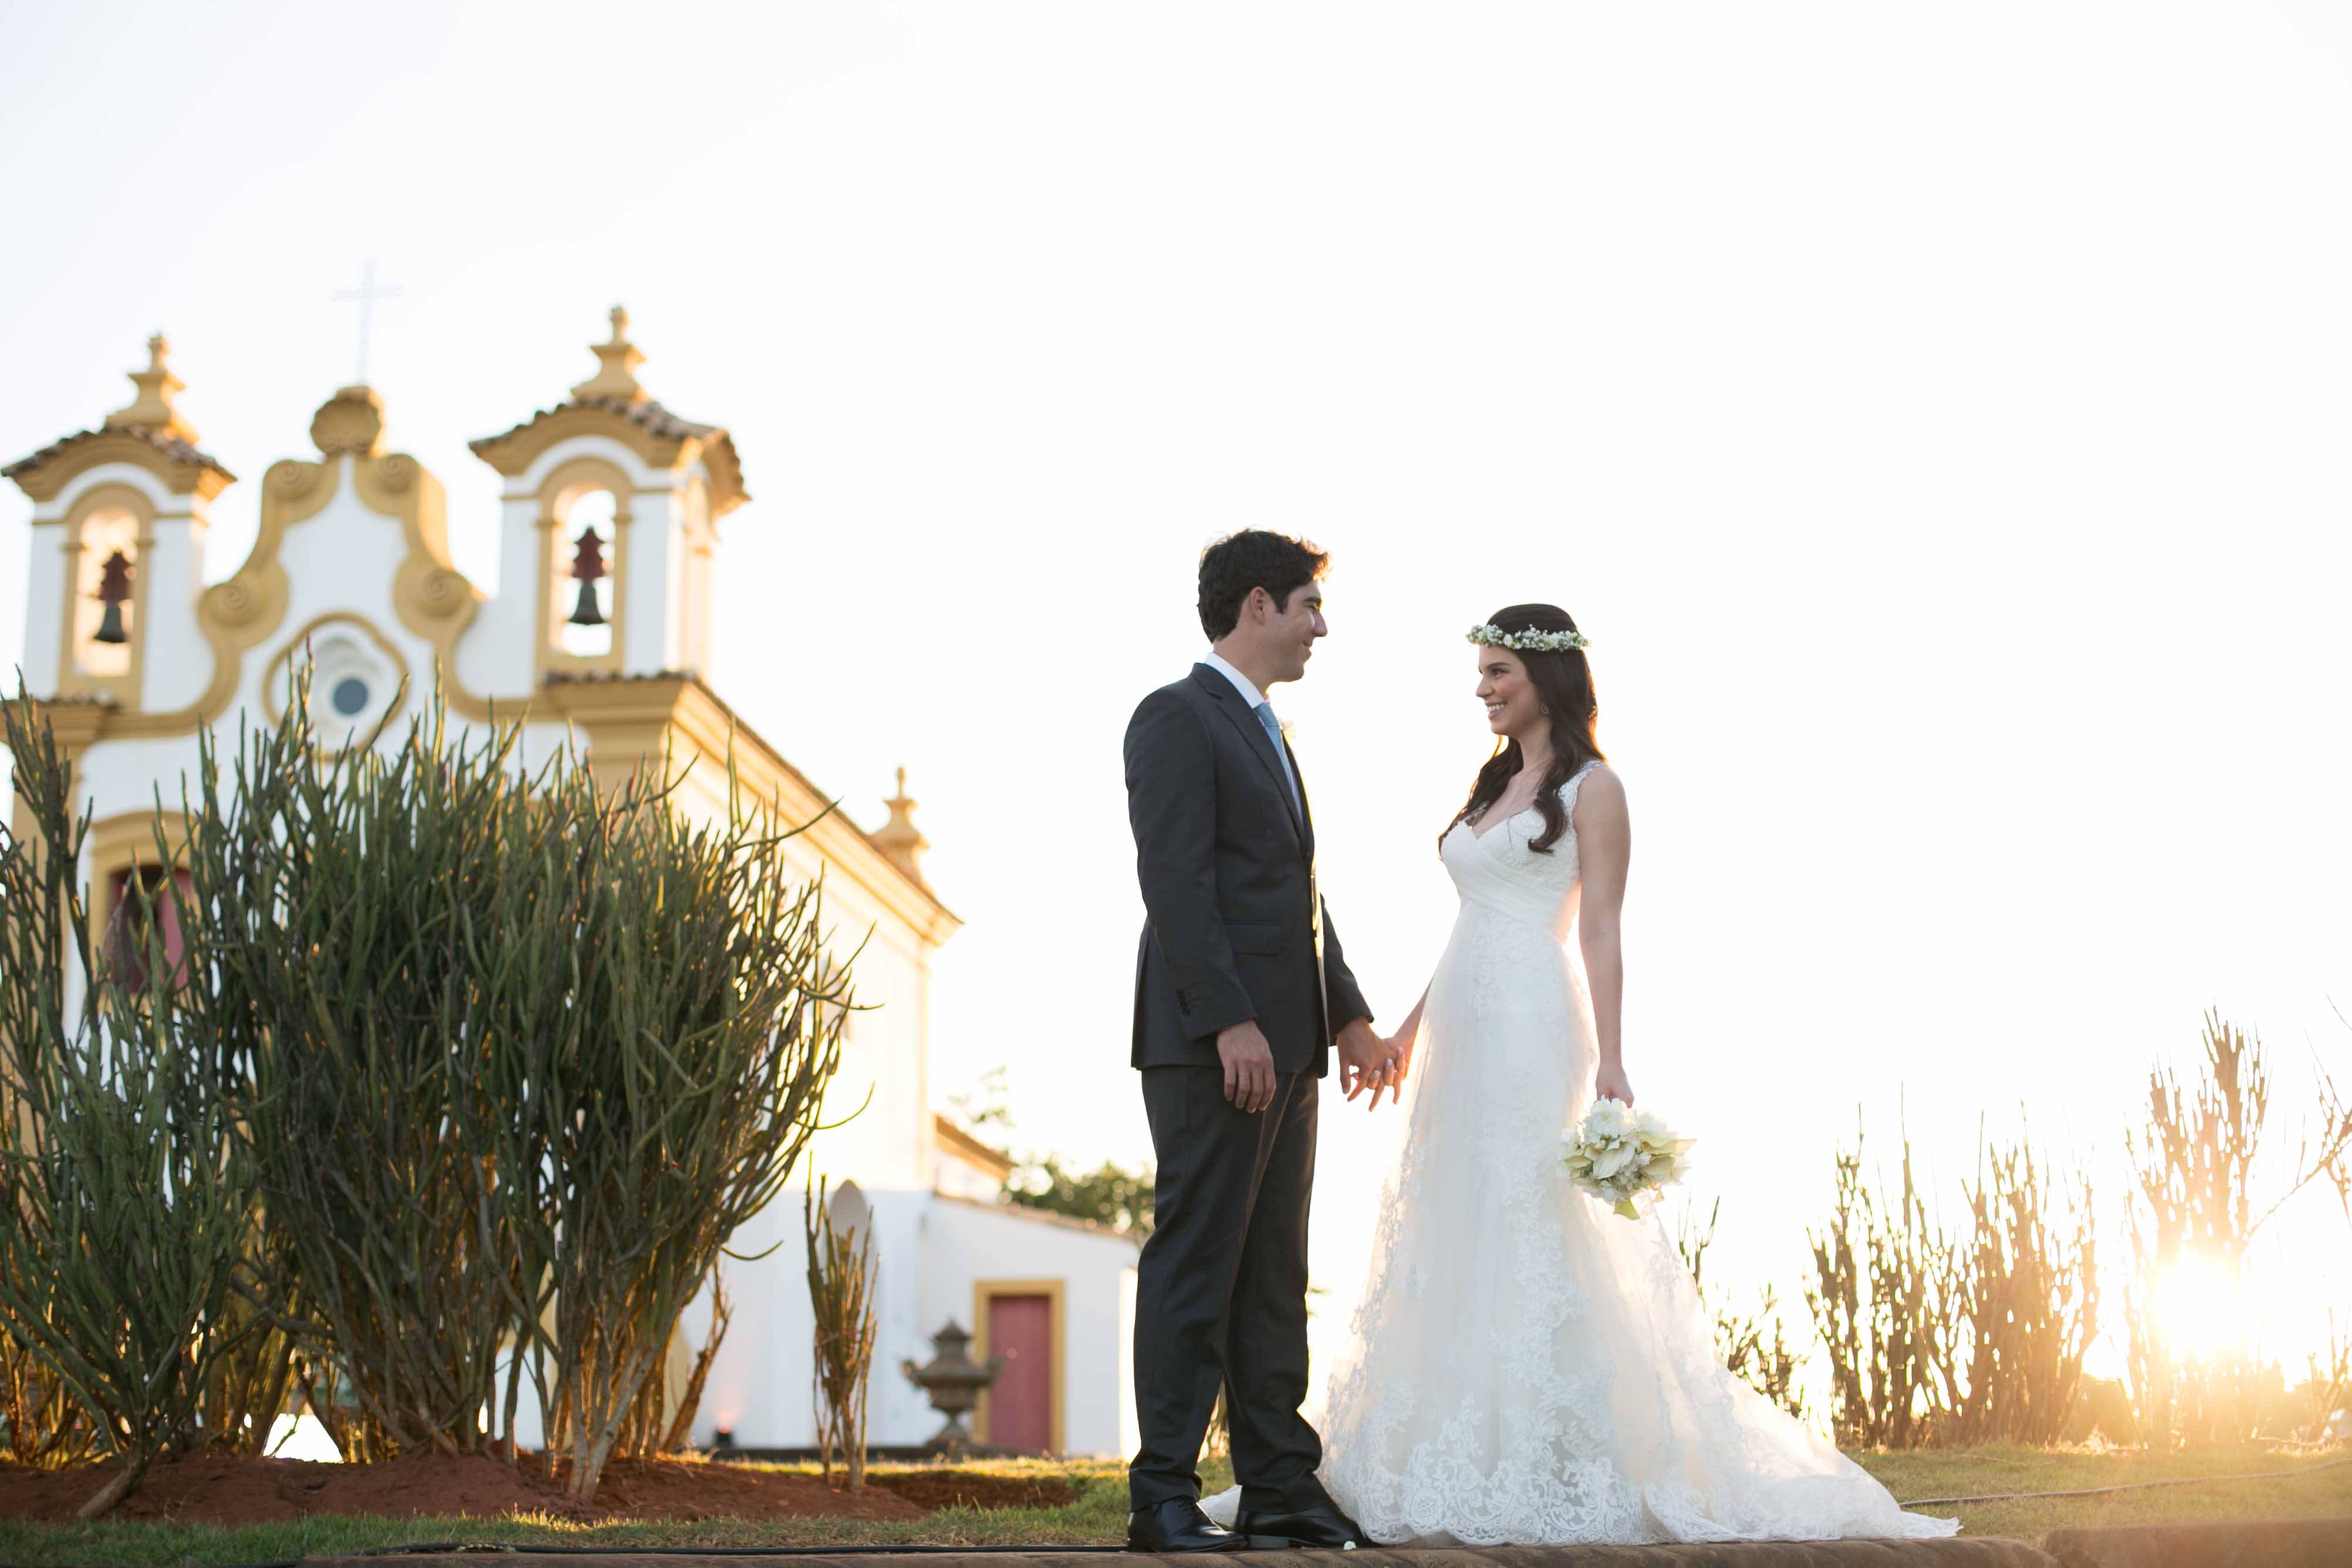 Casamento de dia em igreja = Renata + Junior